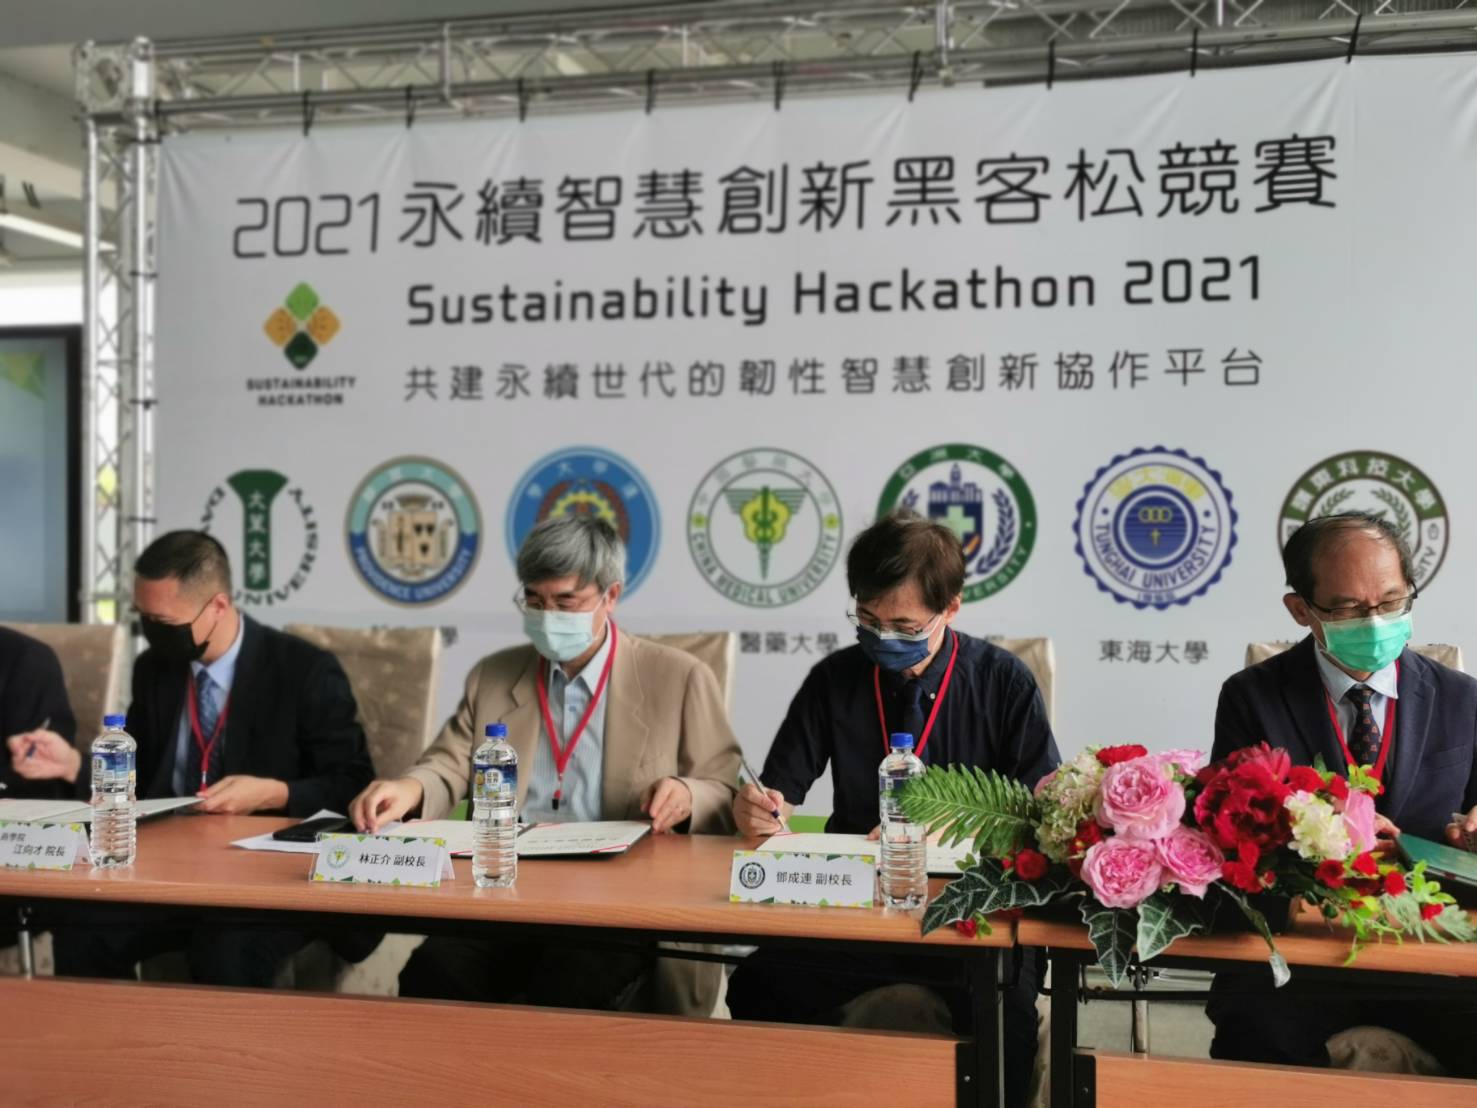 亞大副校長鄧成連(右二)，於2021智慧永續黑客松活動中代表簽約。